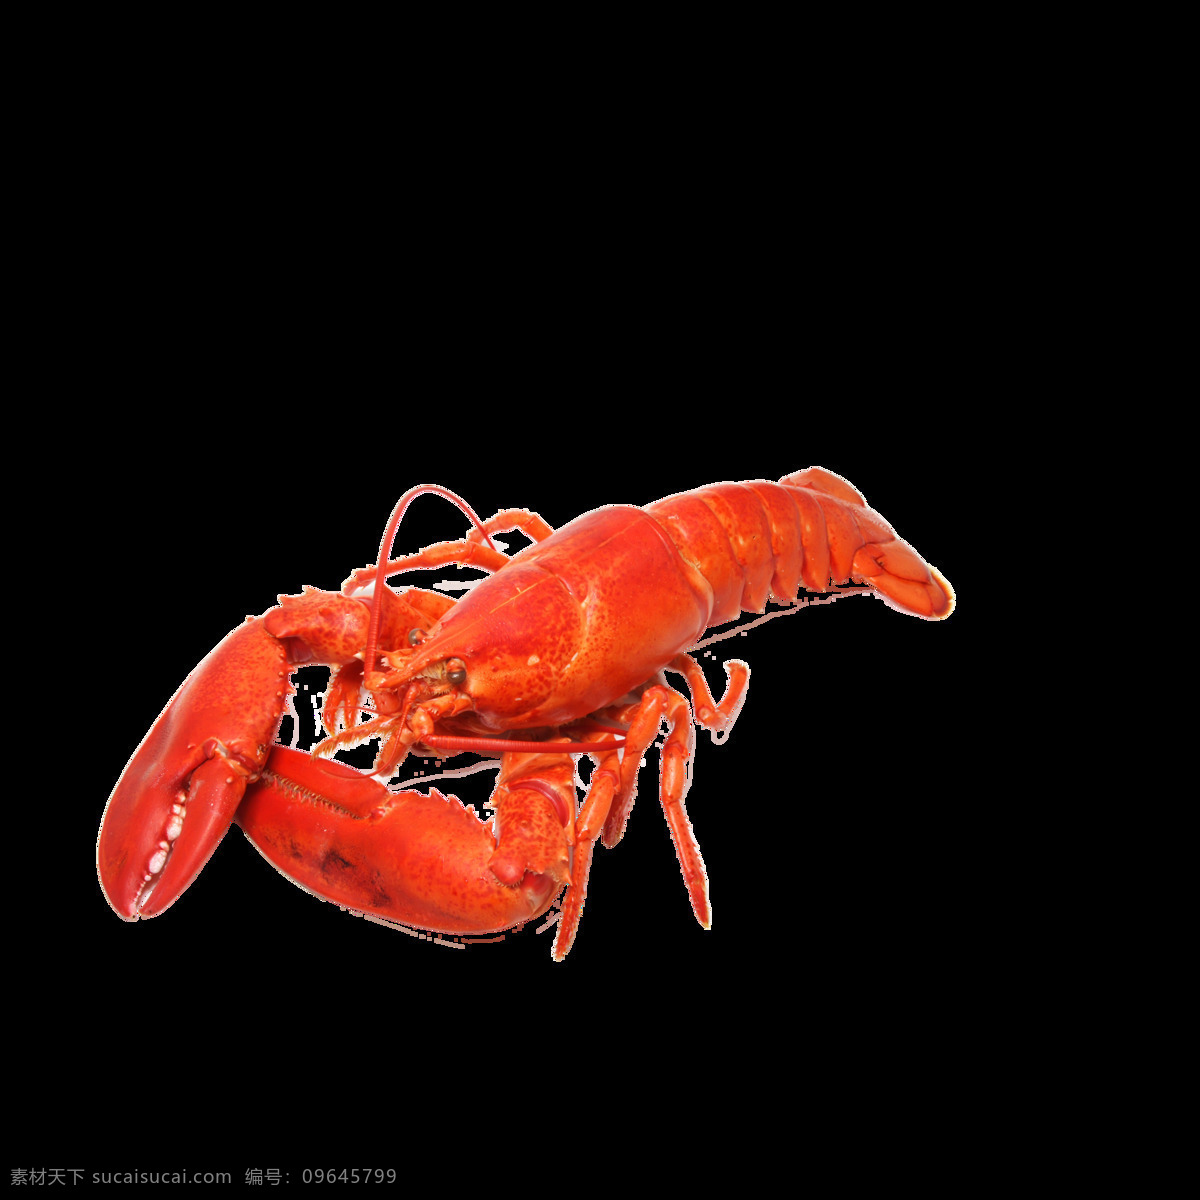 虾 大龙虾 小龙虾 龙虾素材 龙虾图片 北大青鸟 生物世界 海洋生物